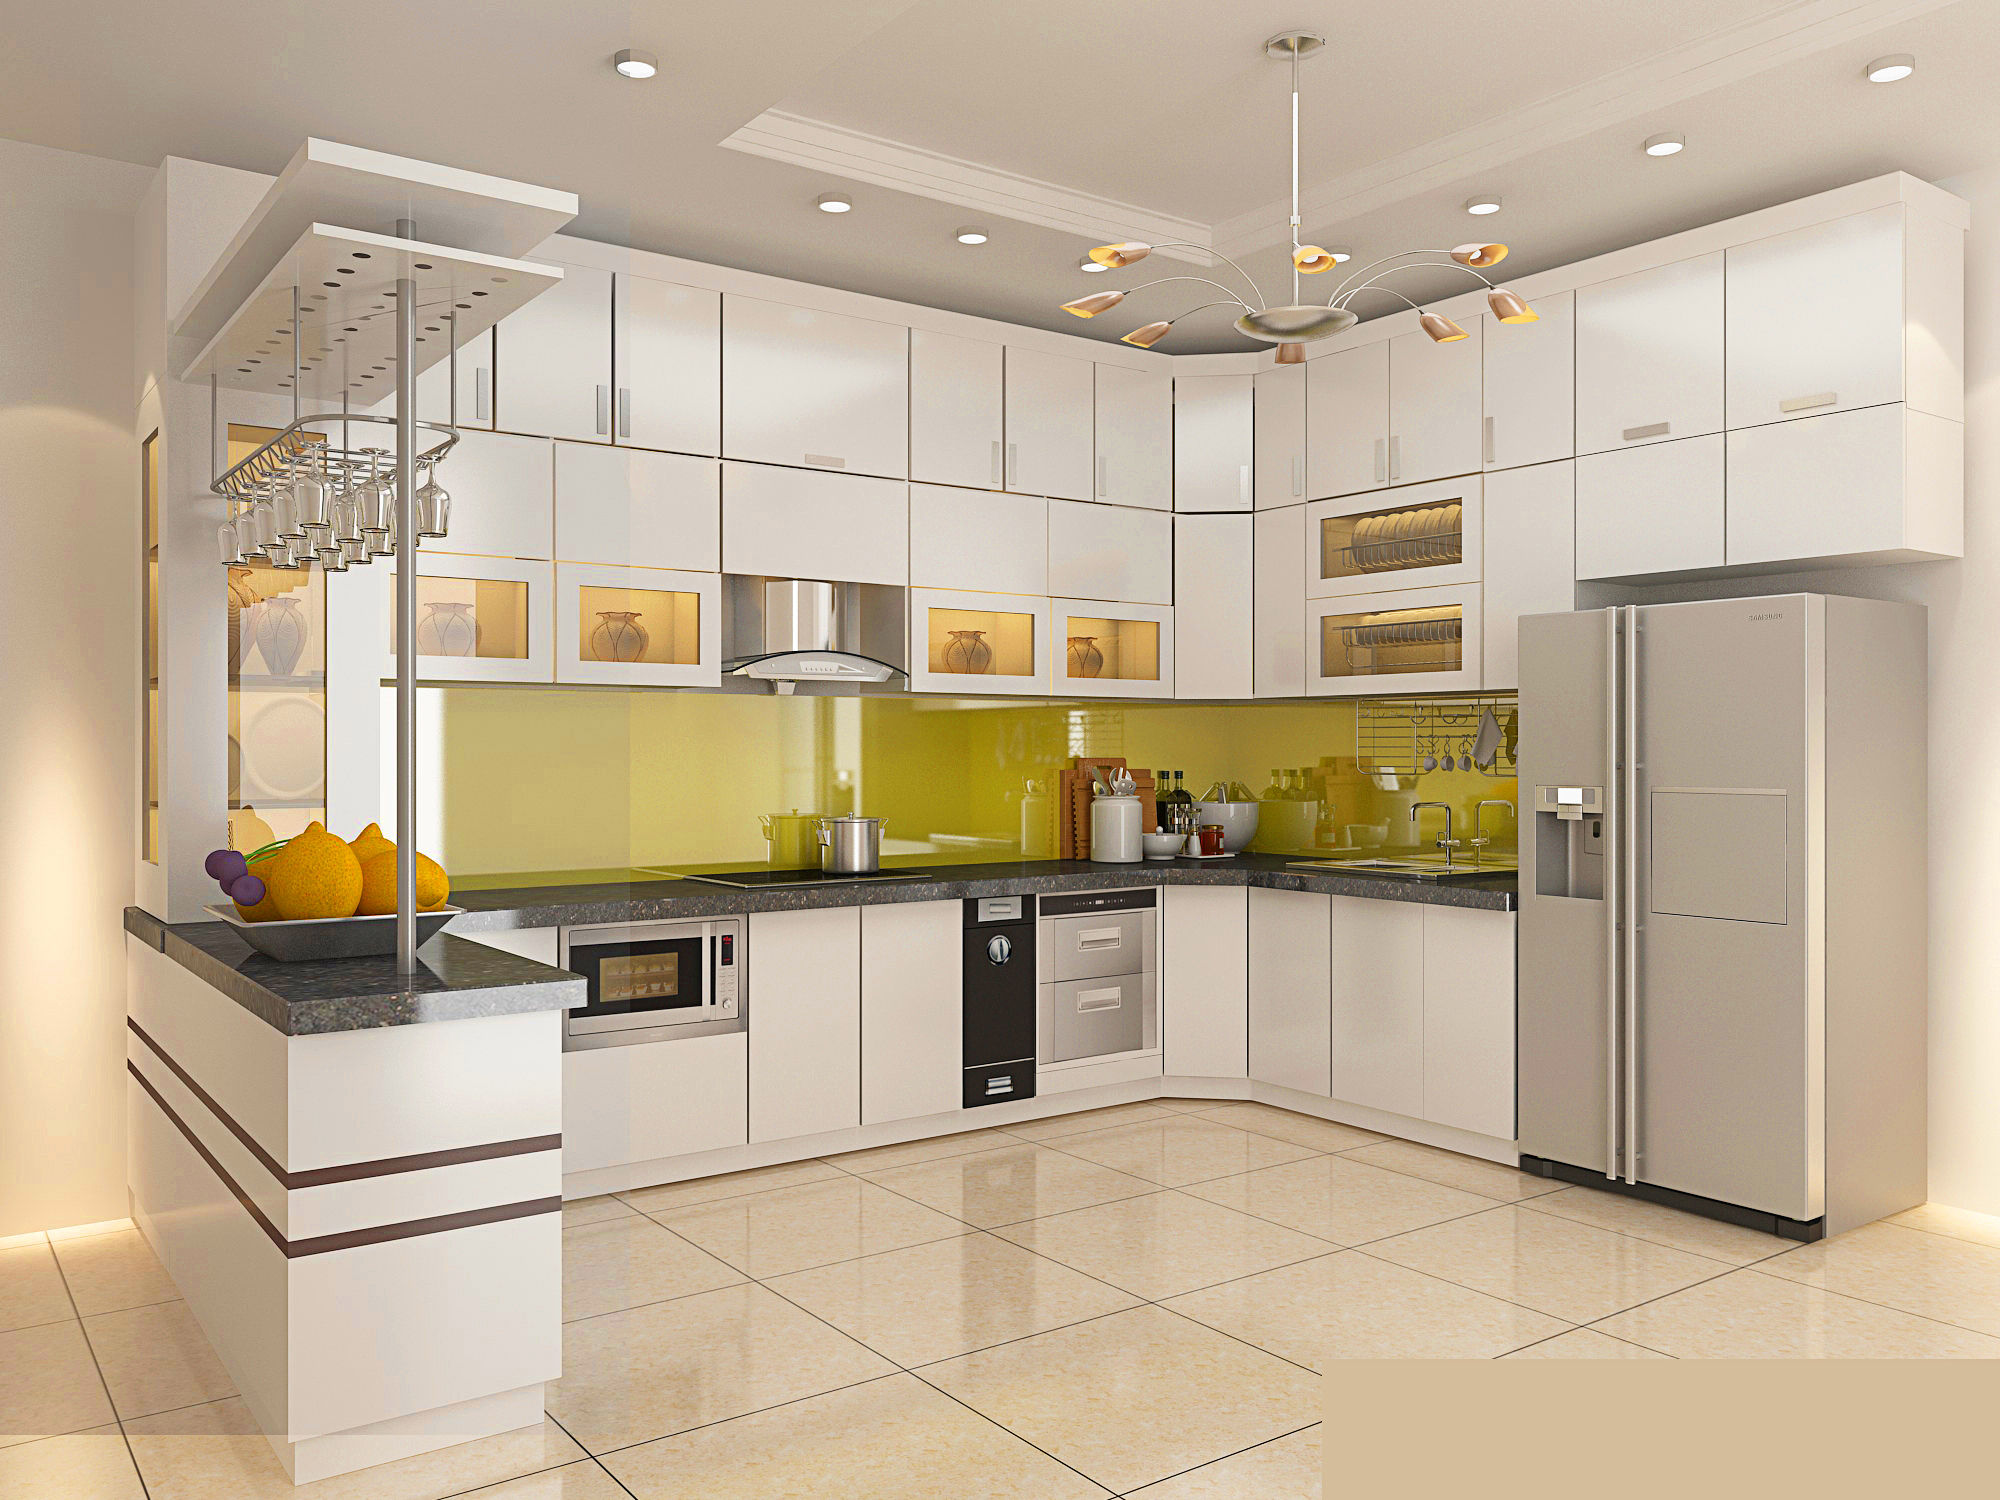 Thiết bị nhà bếp đúng chọn lựa rất quan trọng để giúp bạn hoàn thiện không gian bếp tối ưu hơn. Với những thiết bị tiện ích và thời thượng, bếp của bạn sẽ trở nên đẹp hơn bao giờ hết.